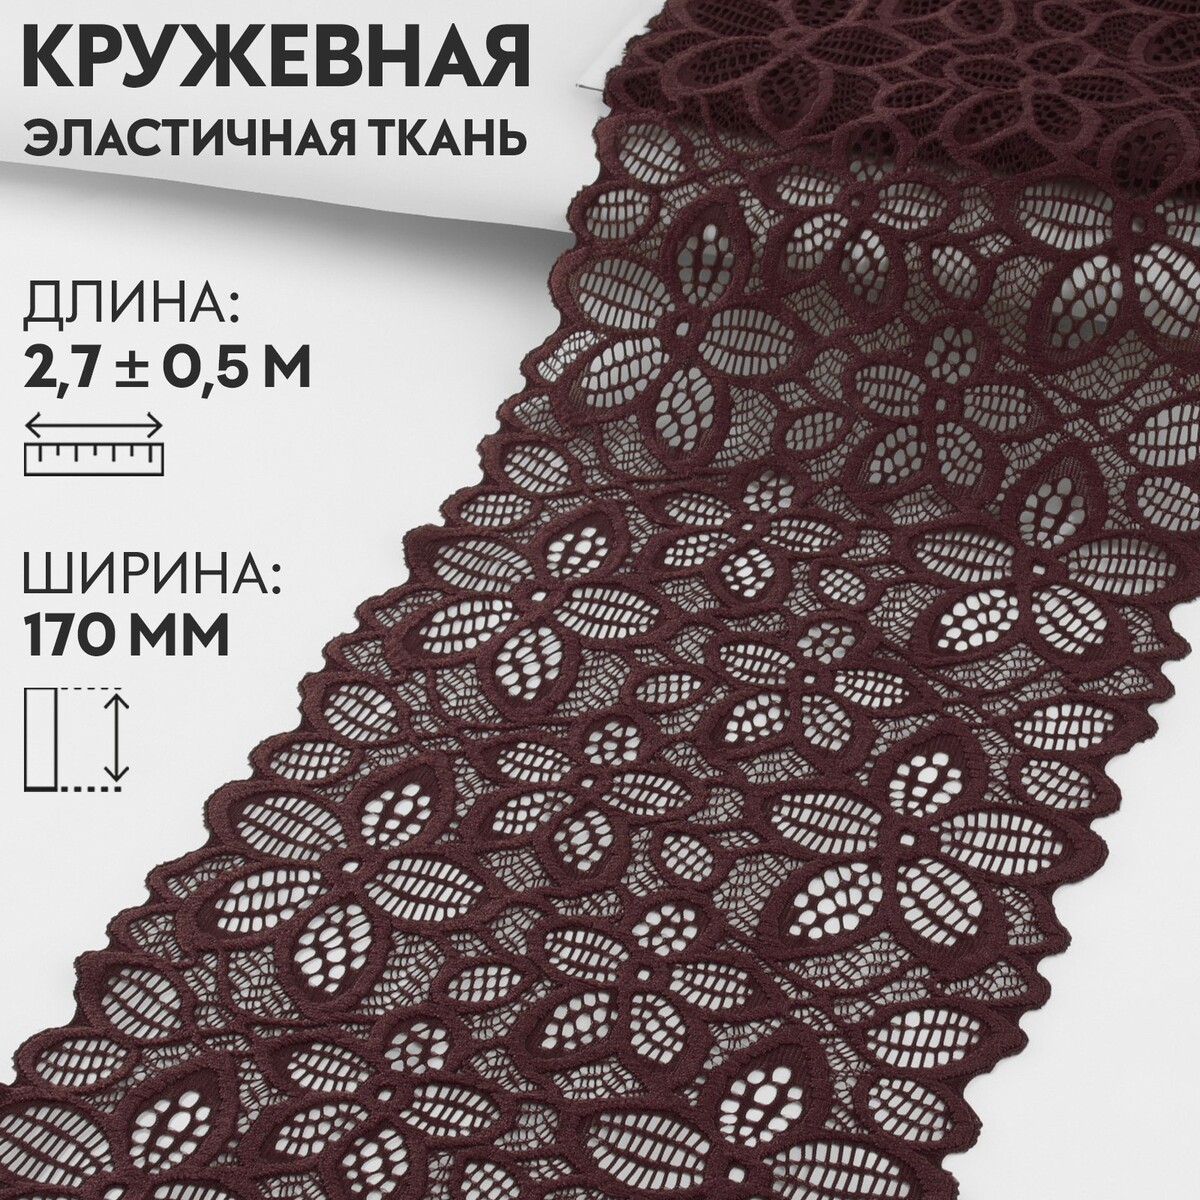 Кружевная эластичная ткань, 170 мм × 2,7 ± 0,5 м, цвет шоколадный кружевная эластичная ткань 170 мм × 2 7 ± 0 5 м шоколадный